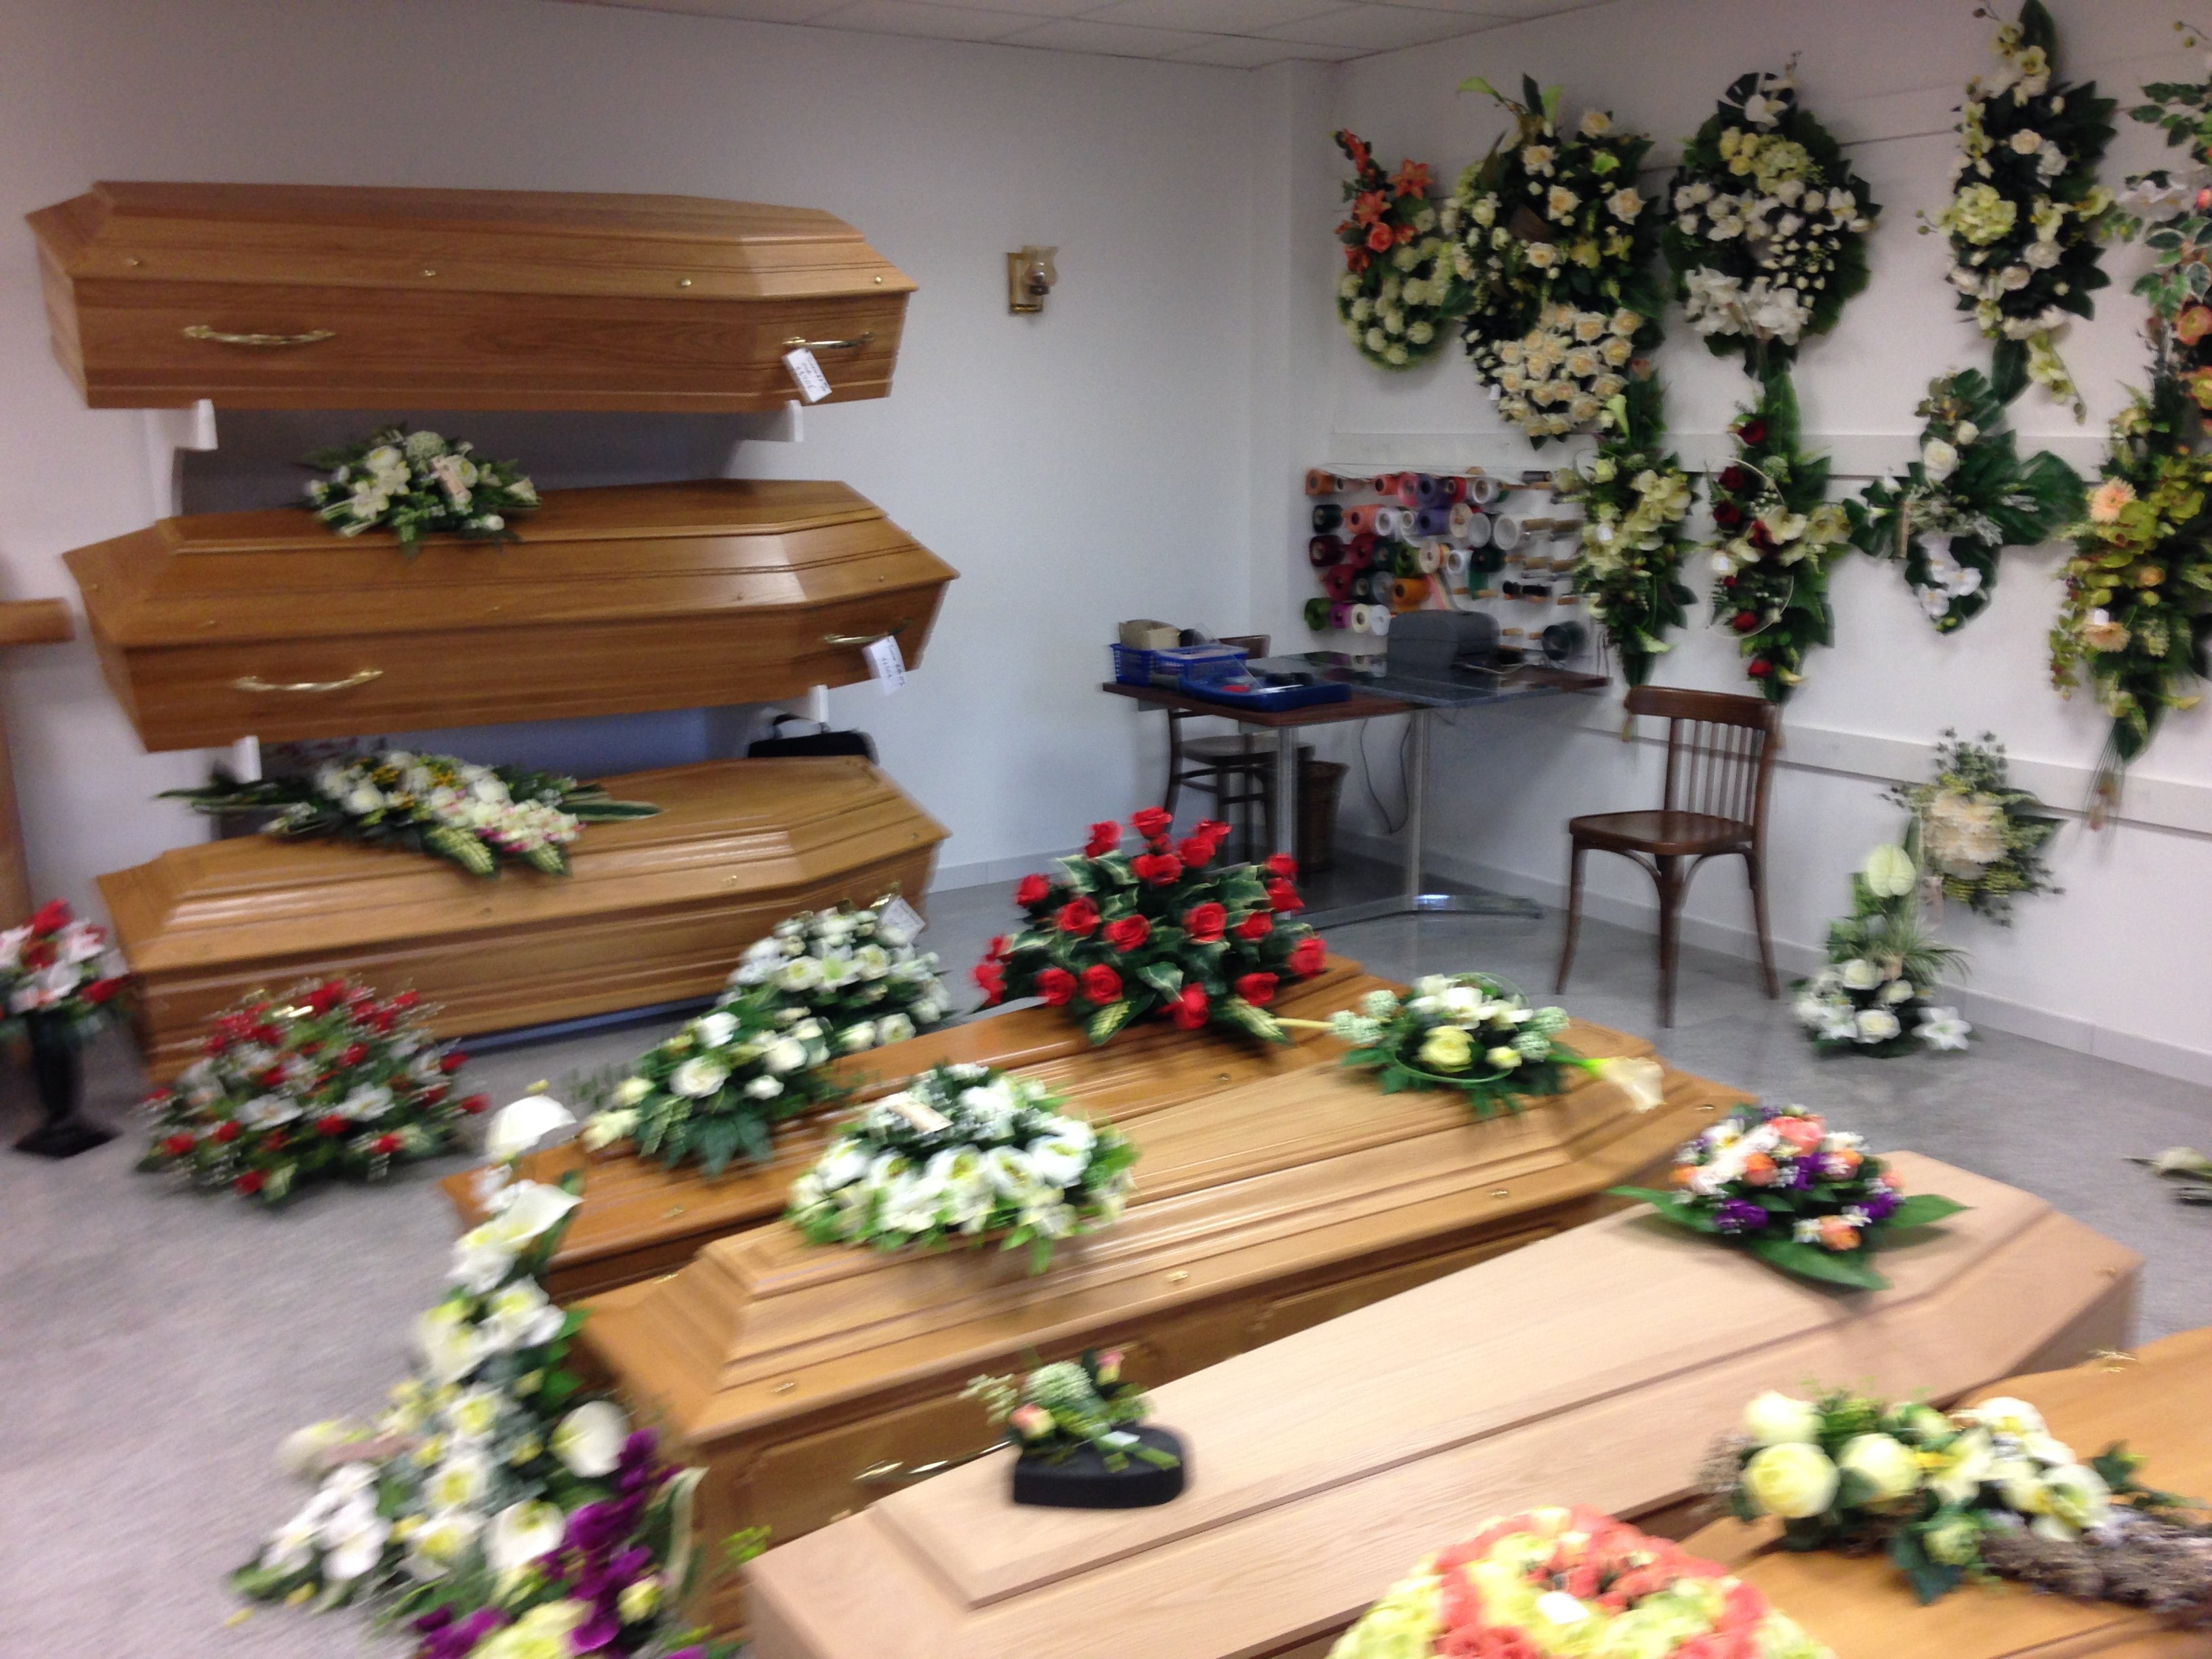 Les pompes funèbres Adam-Hospital proposent aussi des fleurs et des plaques pour orner les cercueils